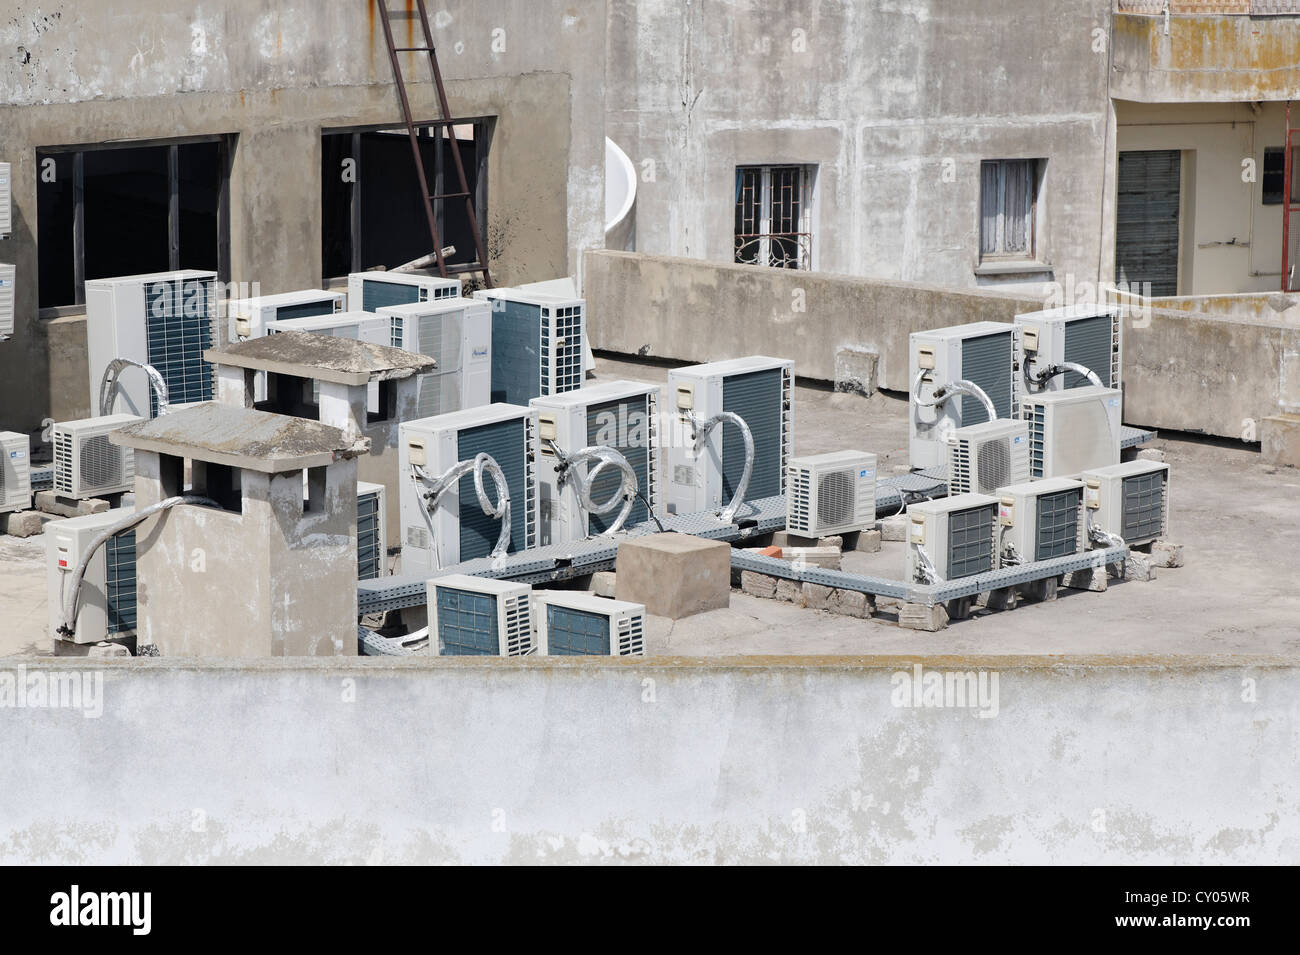 Le unità aria condizionata sul tetto di una casa, Casablanca, Grand Casablanca, Marocco, Maghreb, Africa Settentrionale, Africa Foto Stock